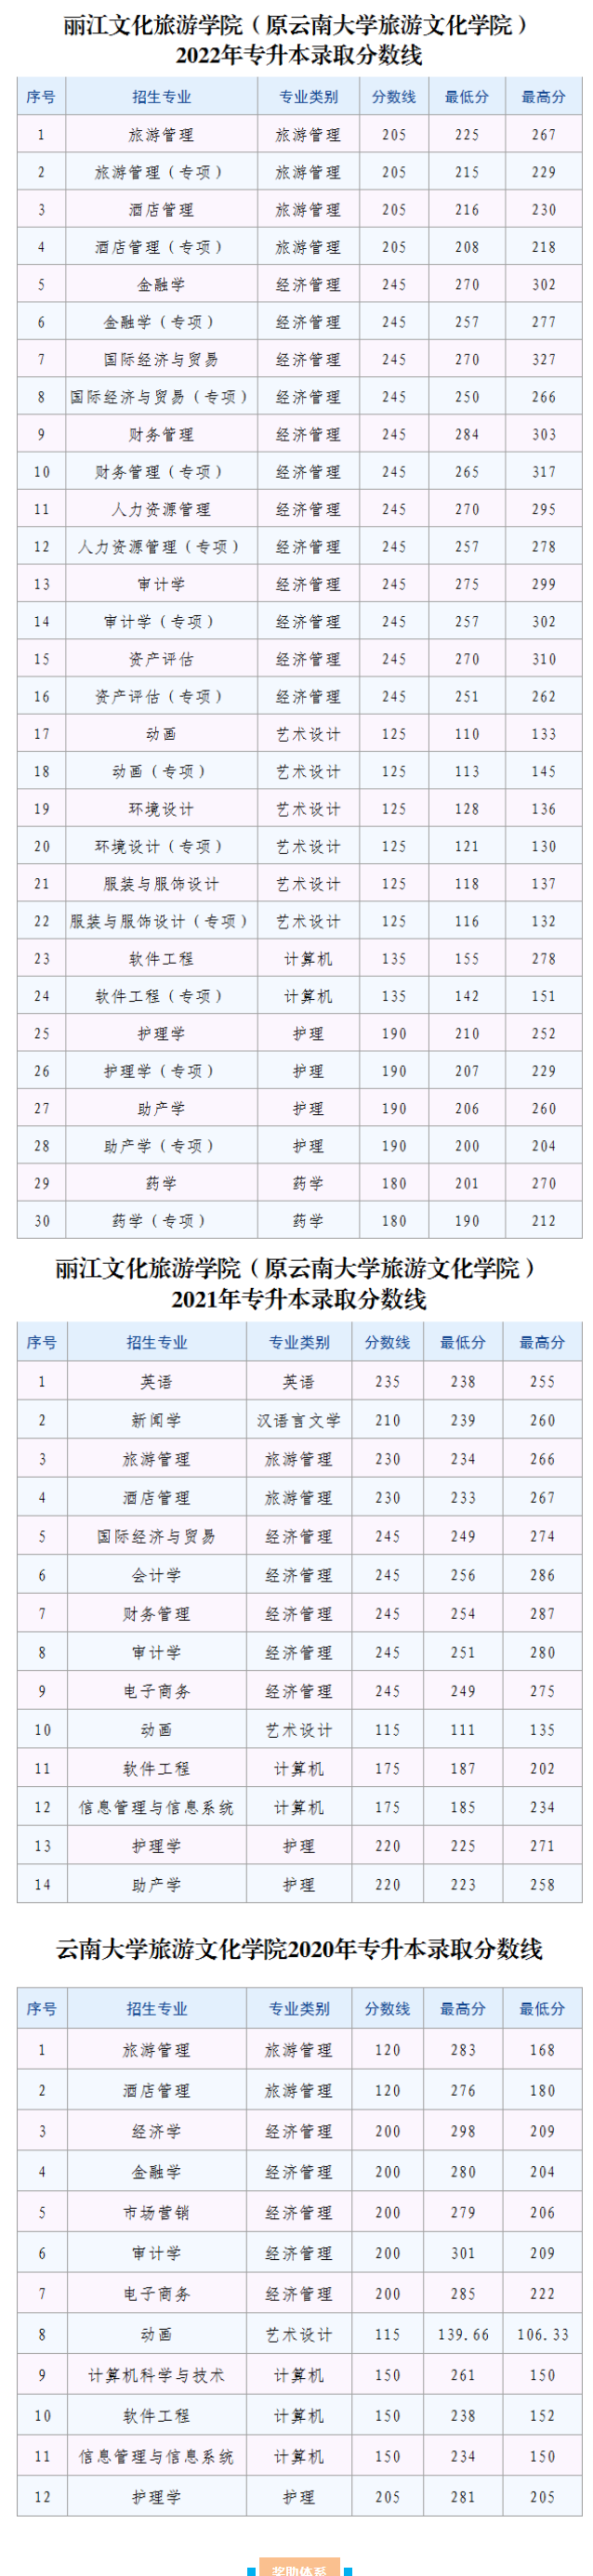 丽江文化旅游学院近三年专升本录取分数情况